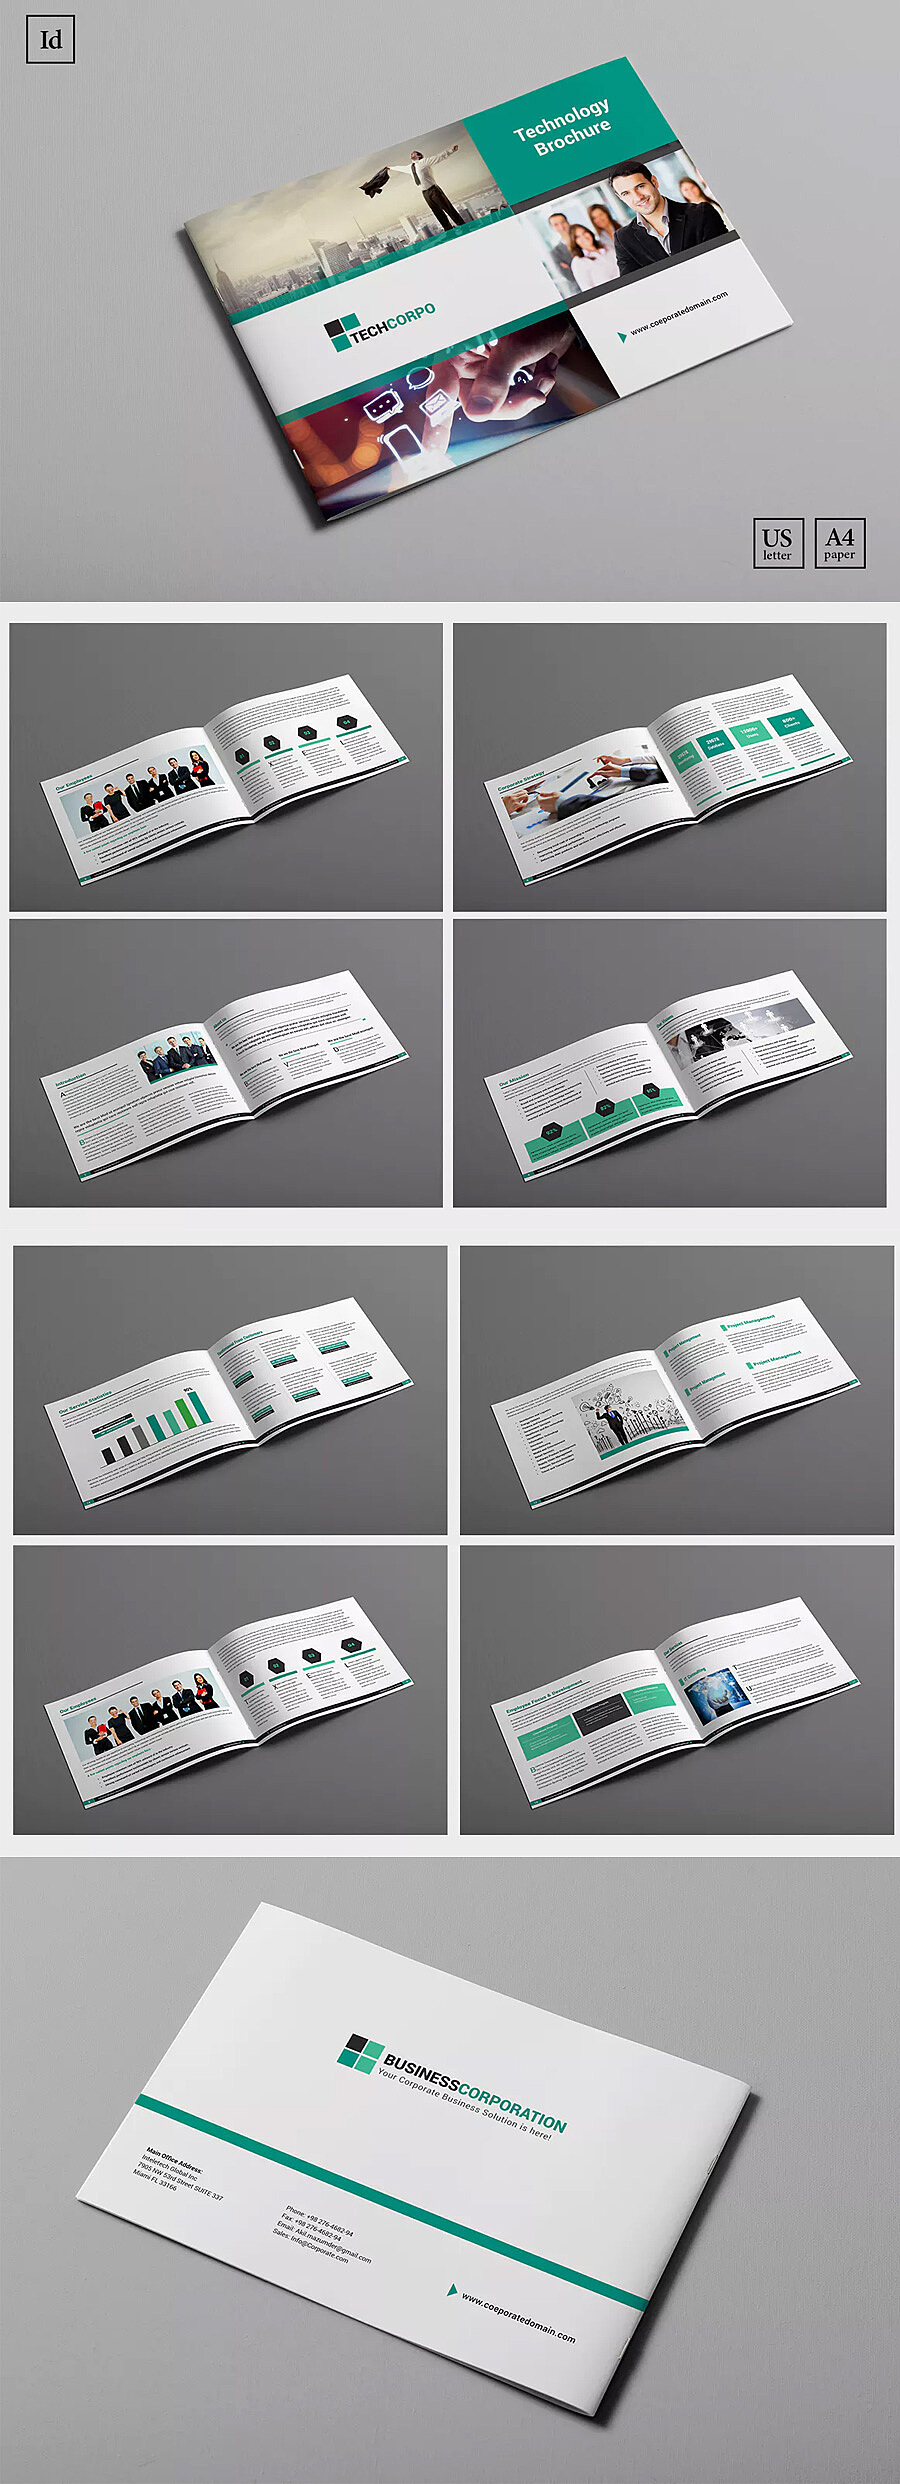 关于画册印刷设计的常用知识